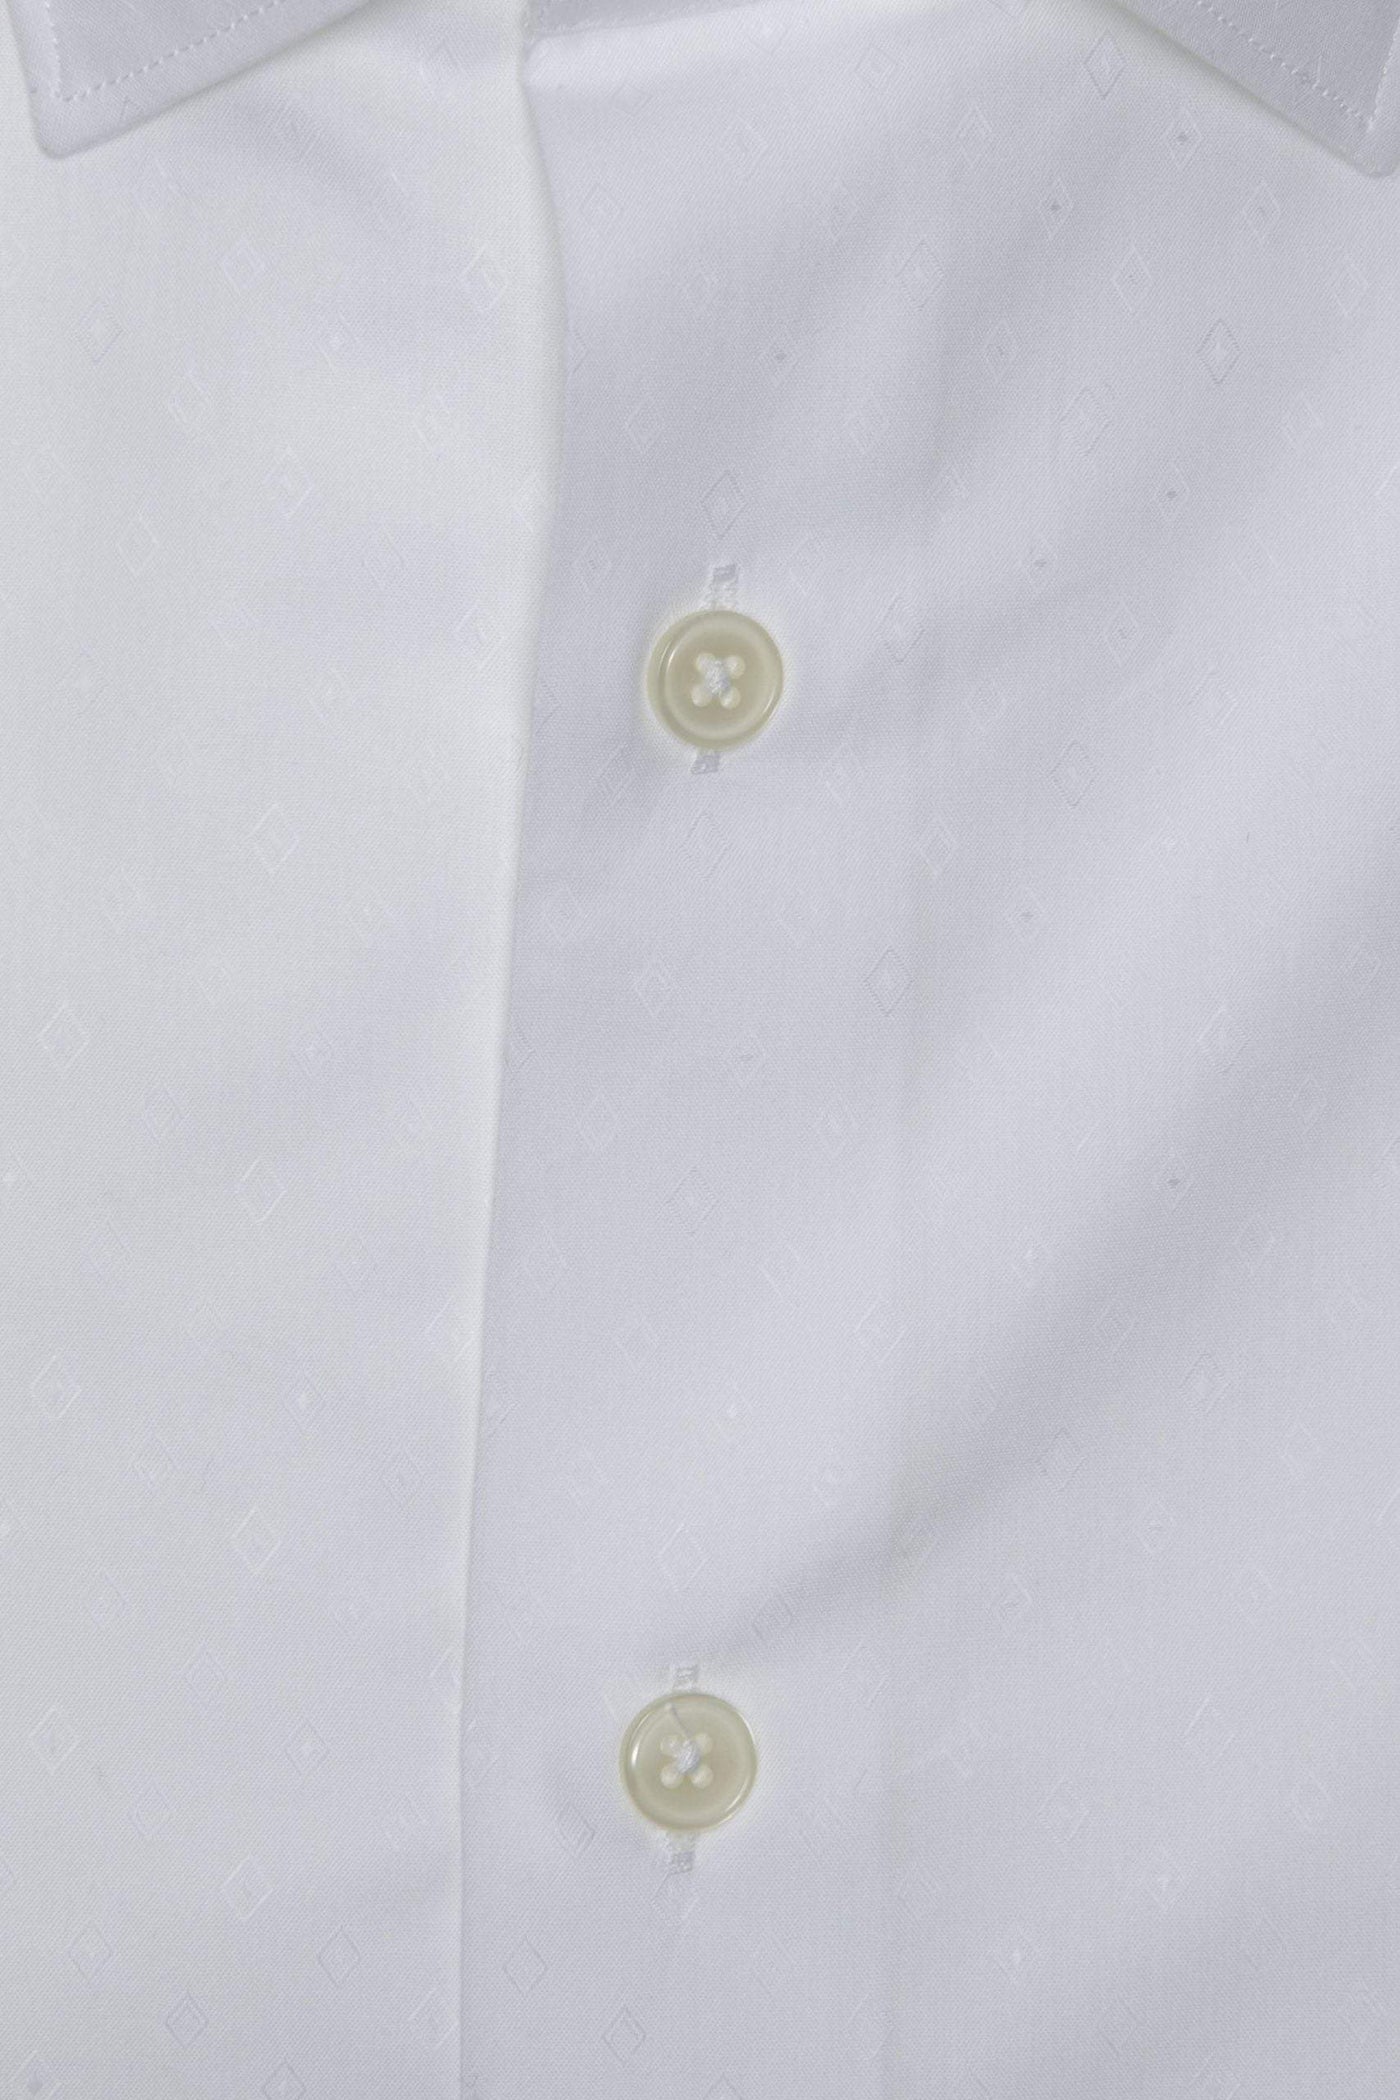 Robert Friedman White Cotton Shirt #men, feed-1, IT40 | M, Robert Friedman, Shirts - Men - Clothing, White at SEYMAYKA